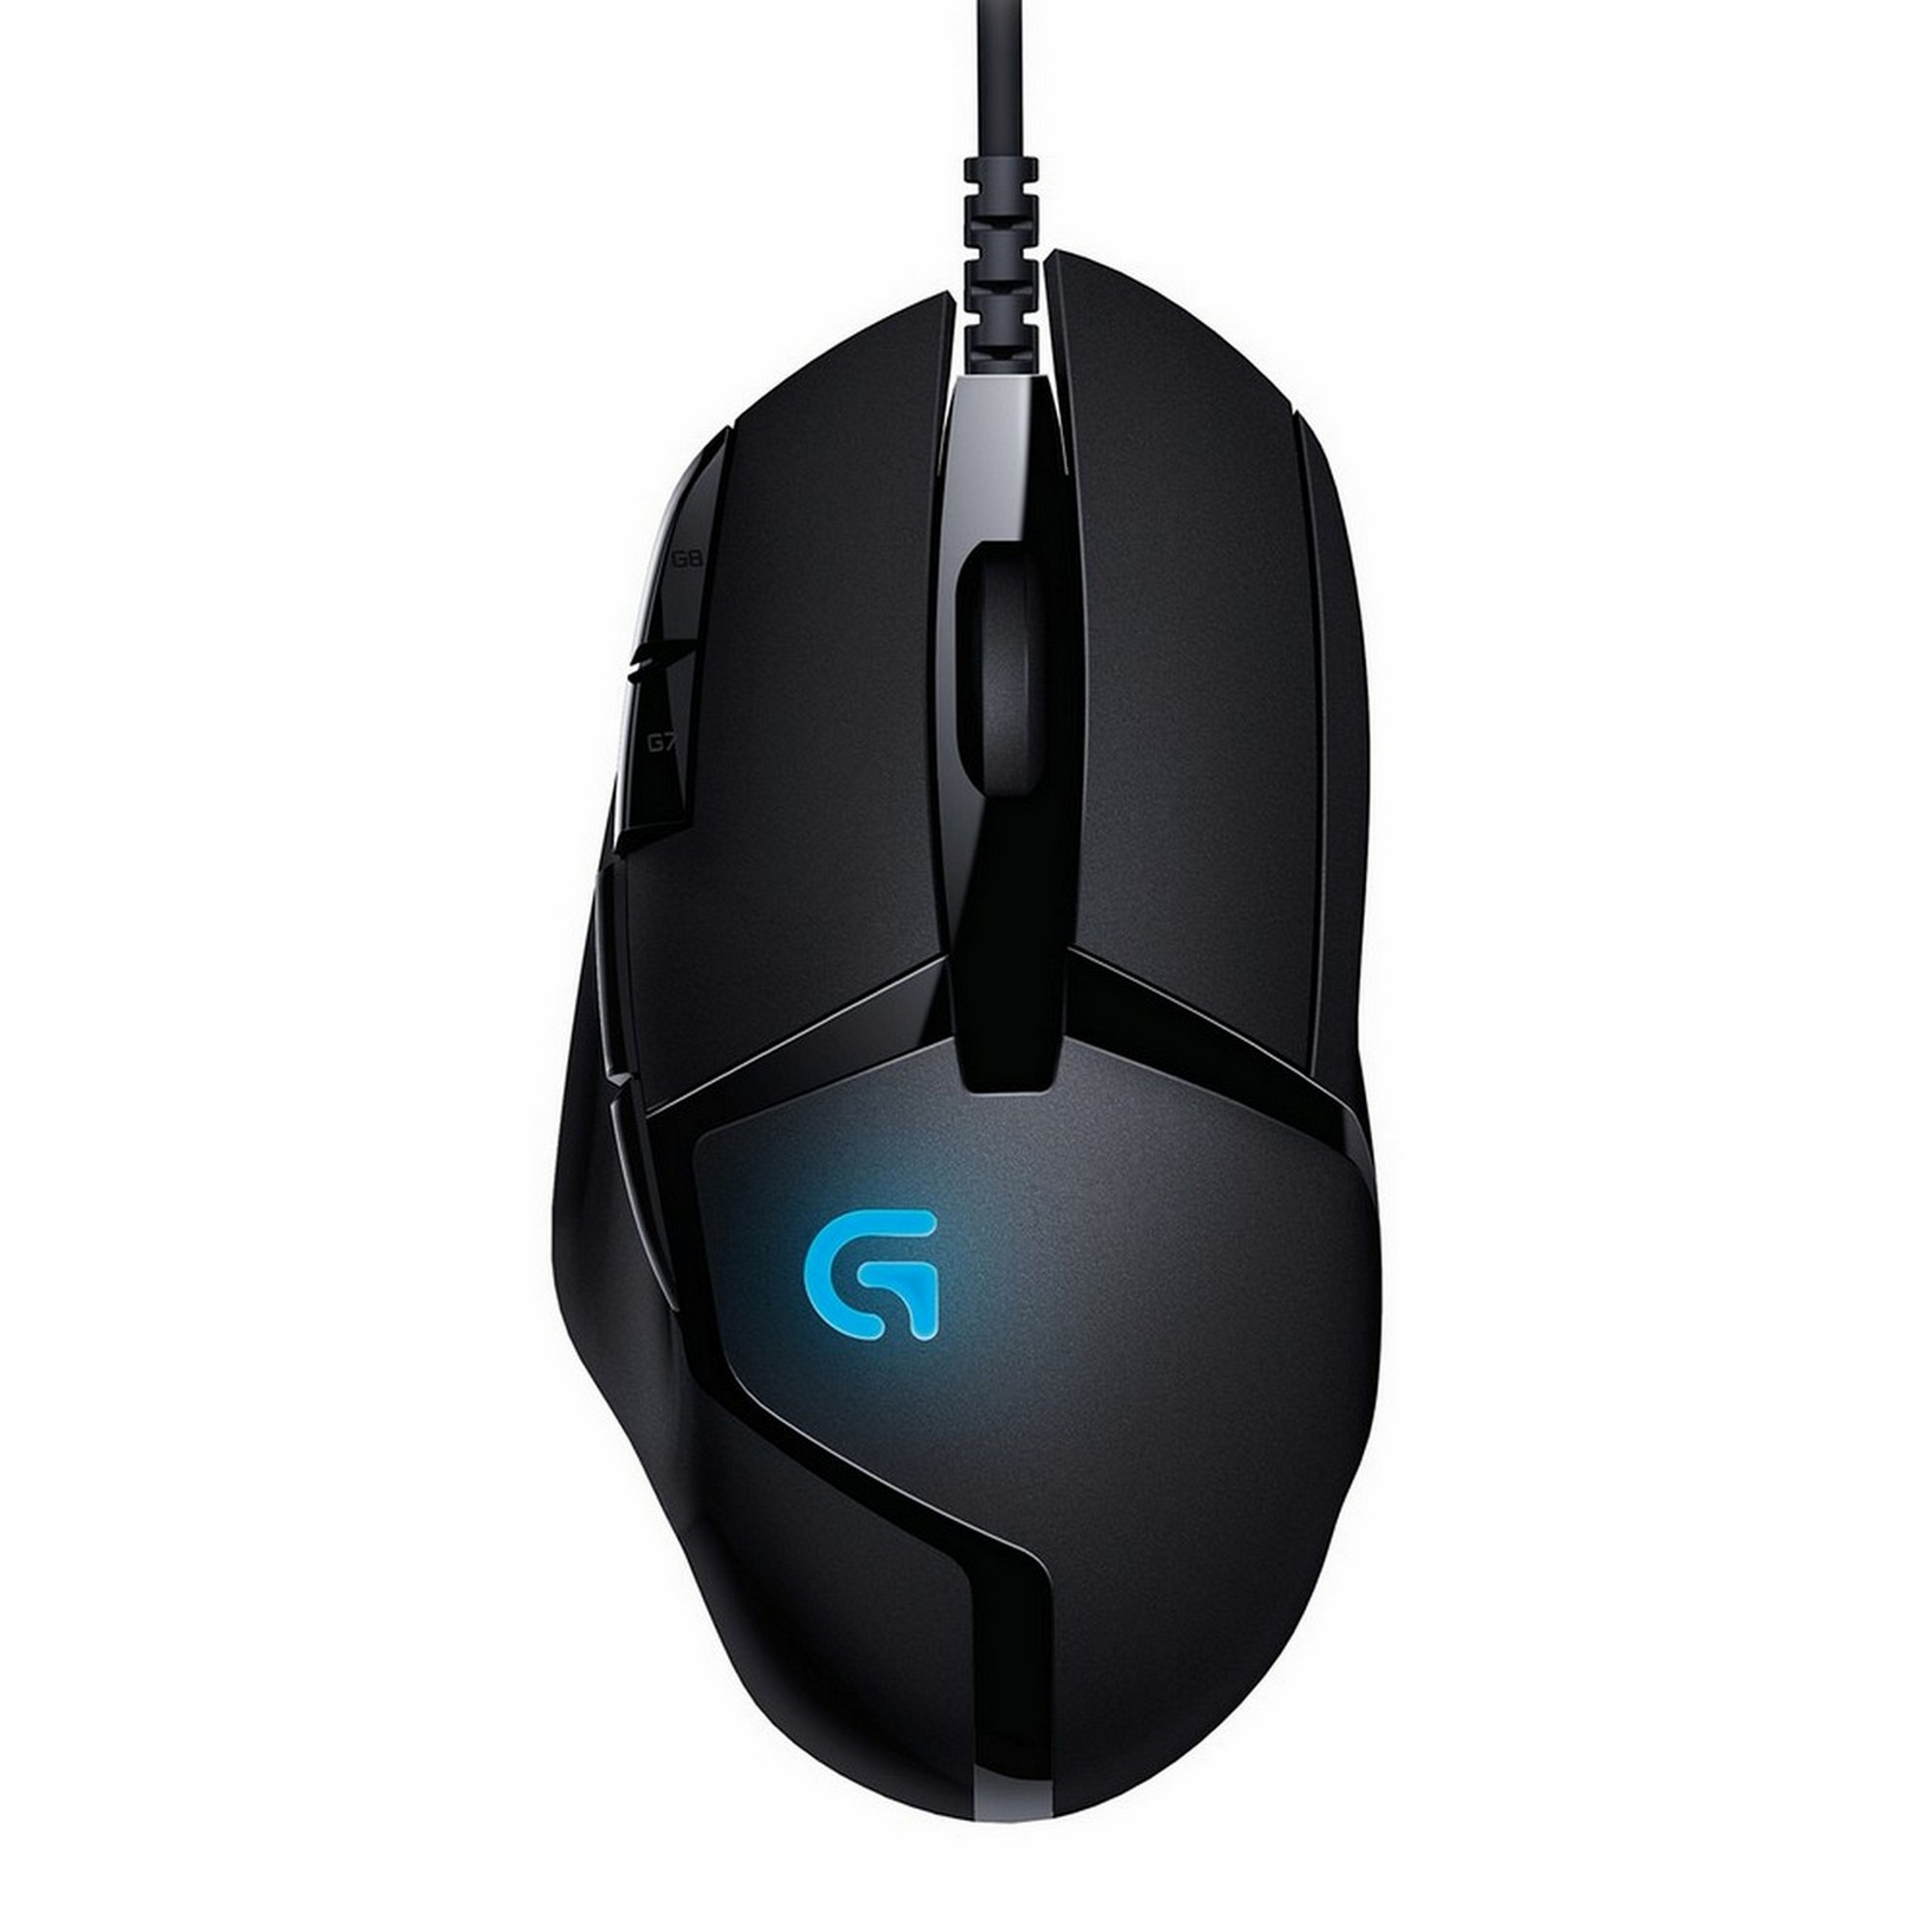 Мышь игровая Logitech G402 Hyperion Fury [910-004067] черная